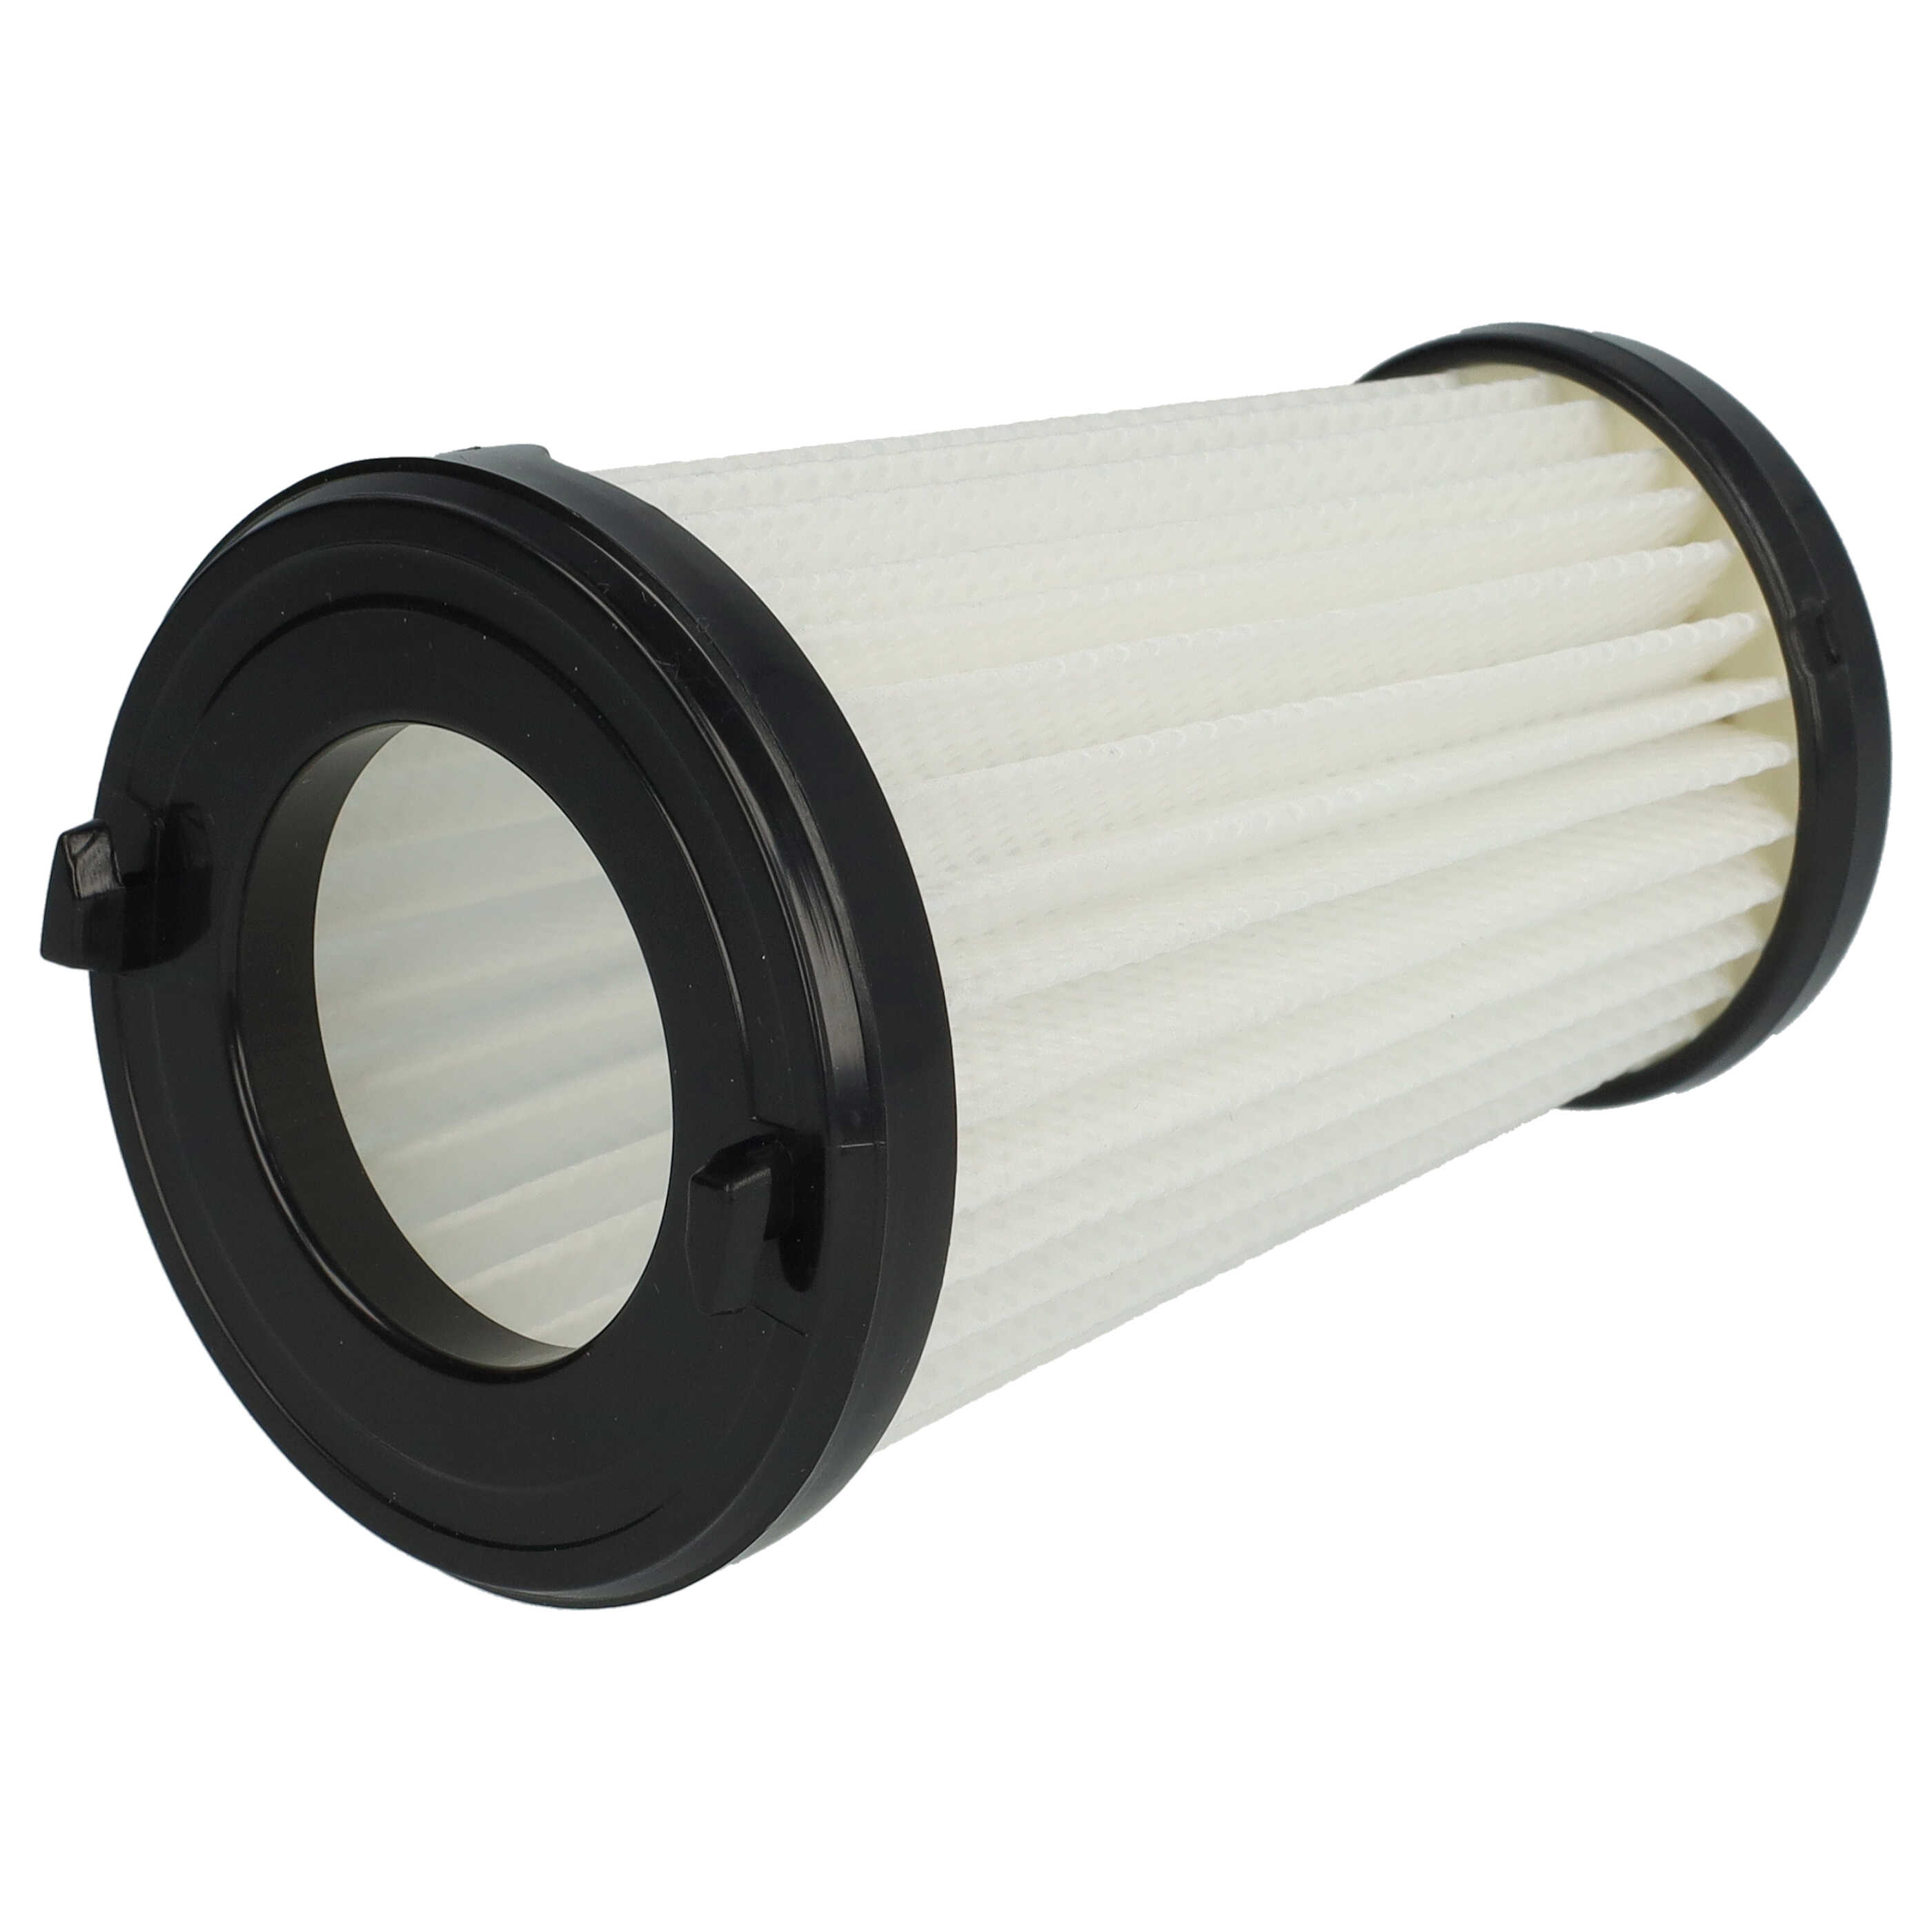 Filtr do odkurzacza AEG zamiennik AEG AEF150, 9001683755, 90094073100 - filtr lamelowy, czarny / biały